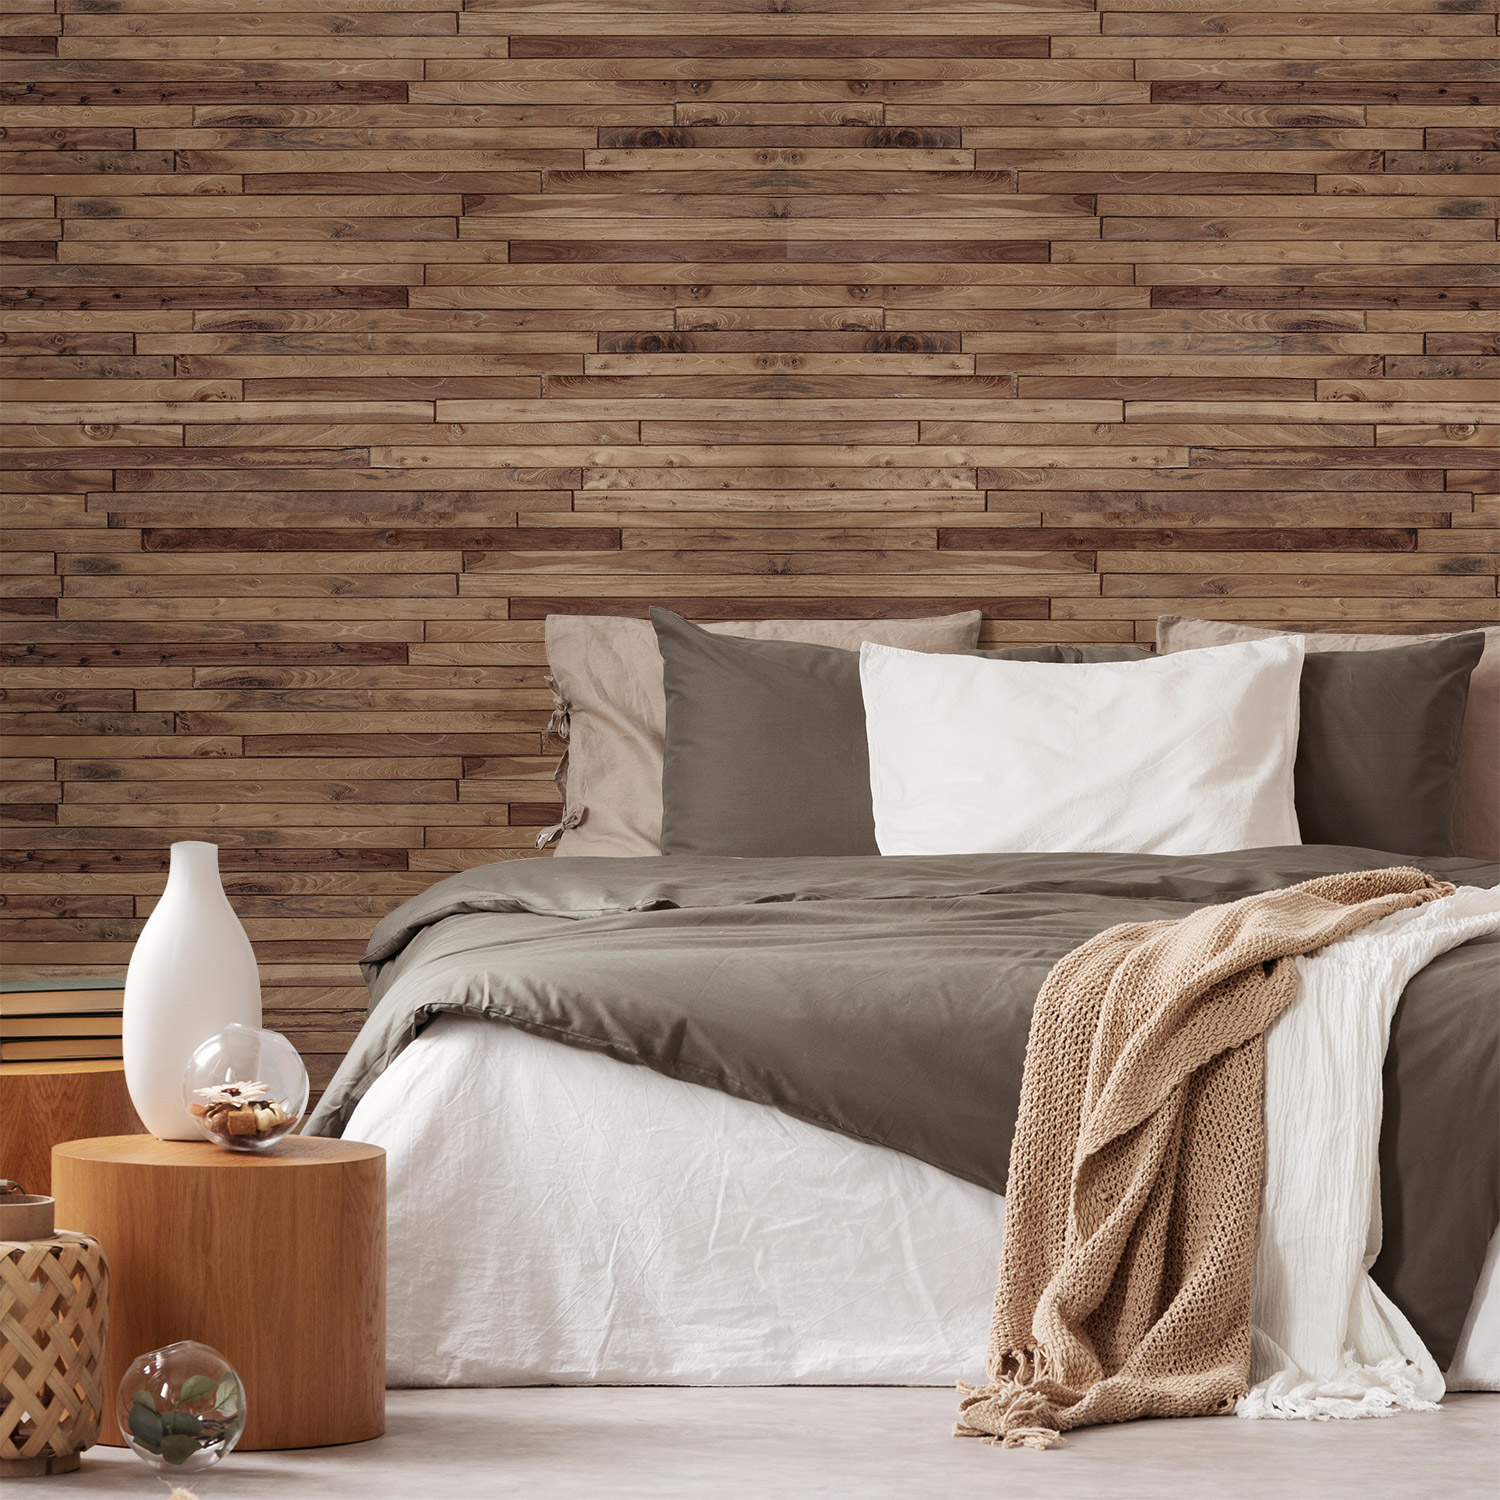 Wandverkleidung für das Schlafzimmer mit Holz V3 Motiv